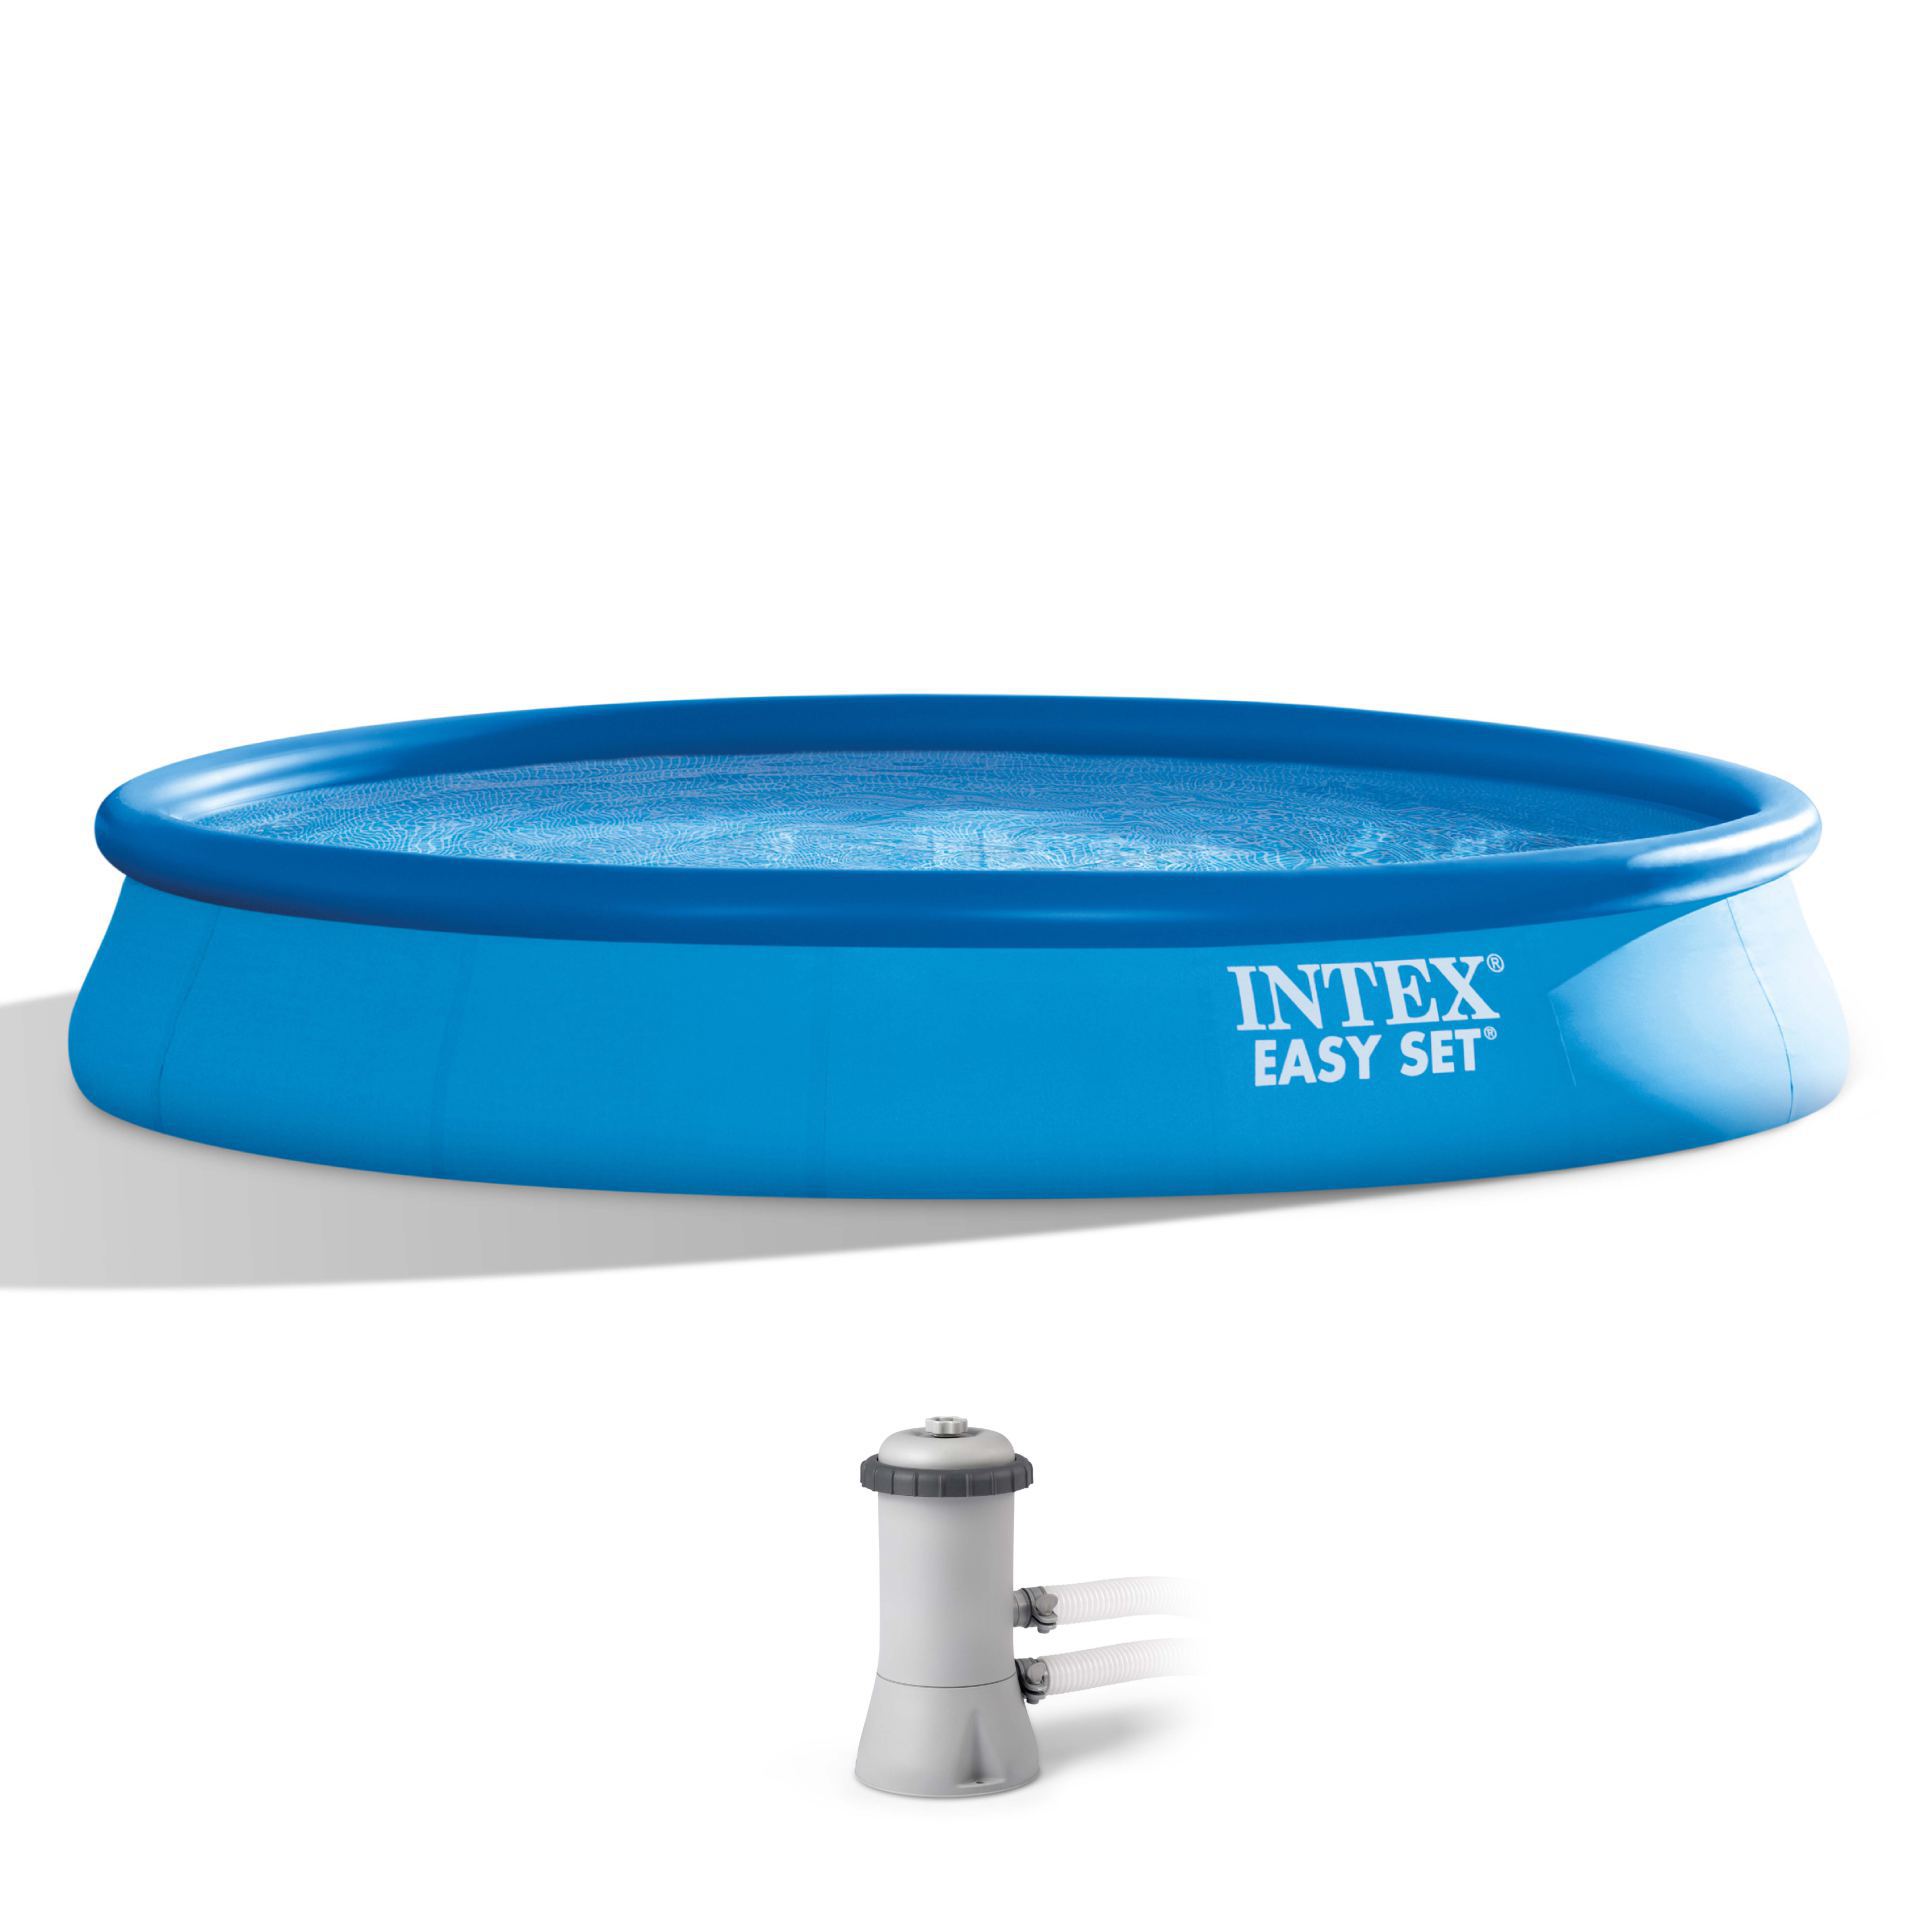 Intex easy set pool set 457cm x 84cm